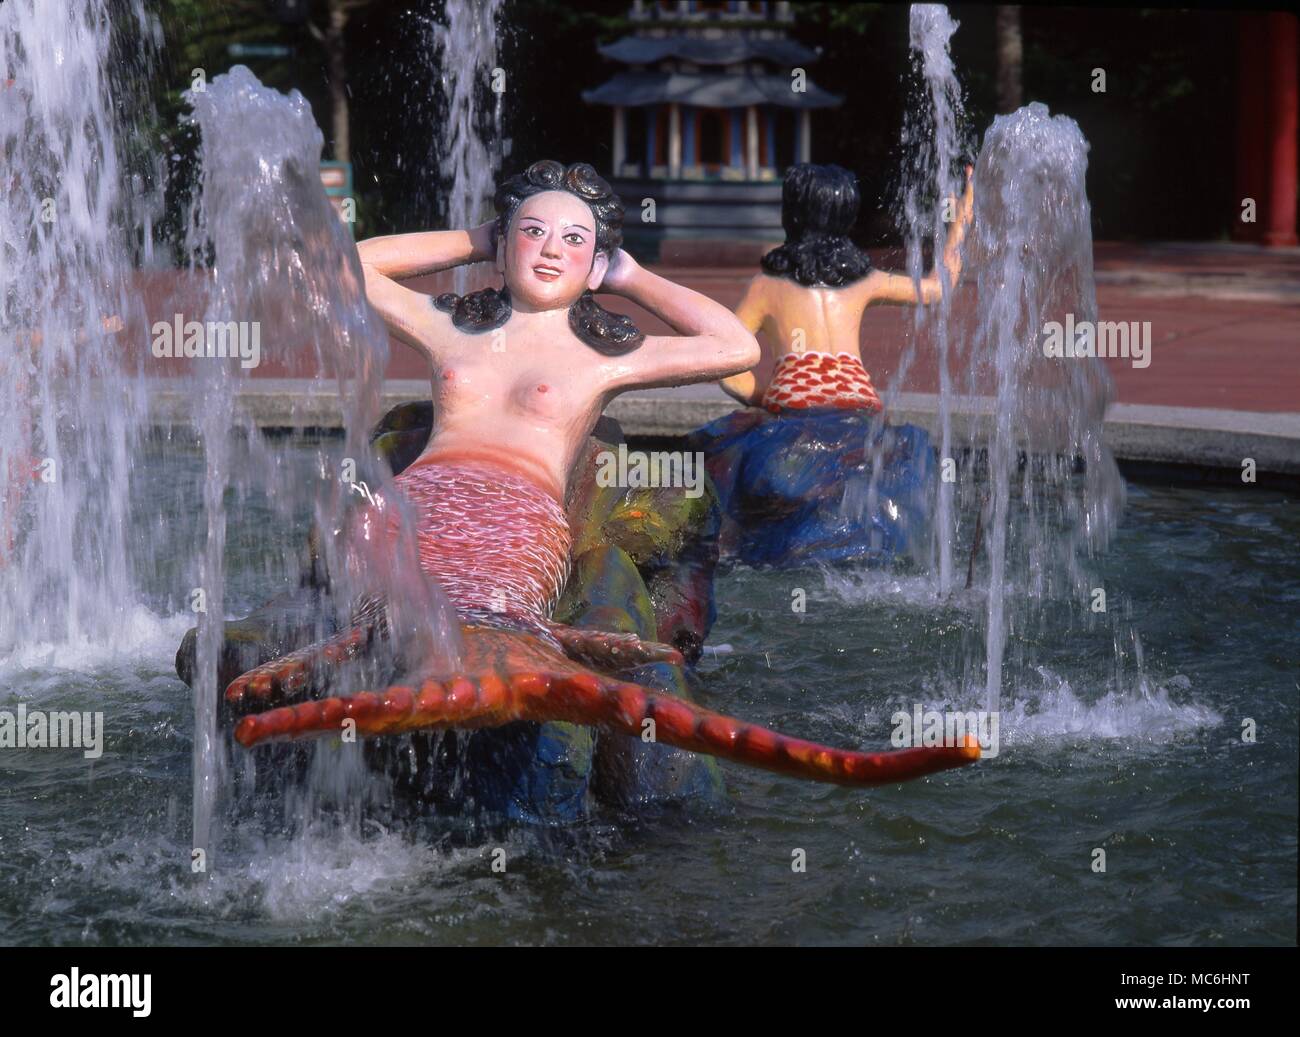 Modelli di sirene con le fontane del cinese Haw Par giardini (Tiger Balm Gardens) in Singapore. Foto Stock